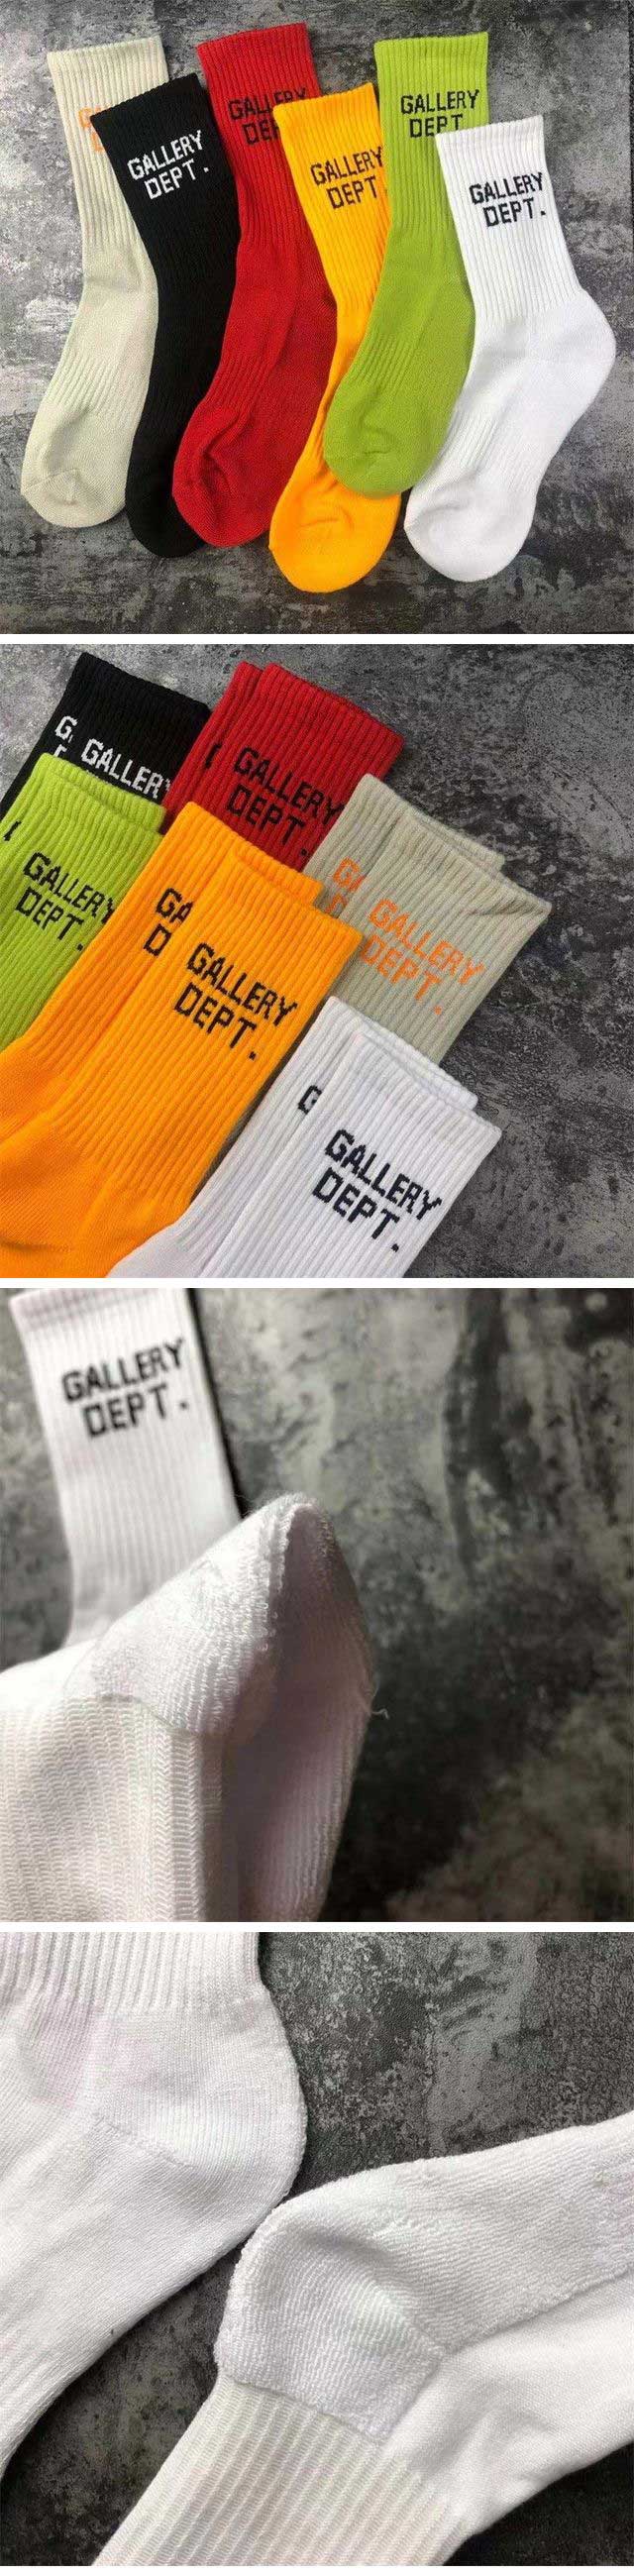 Gallery Dept Basic Socks ギャラリーデプト ベーシック ソックス